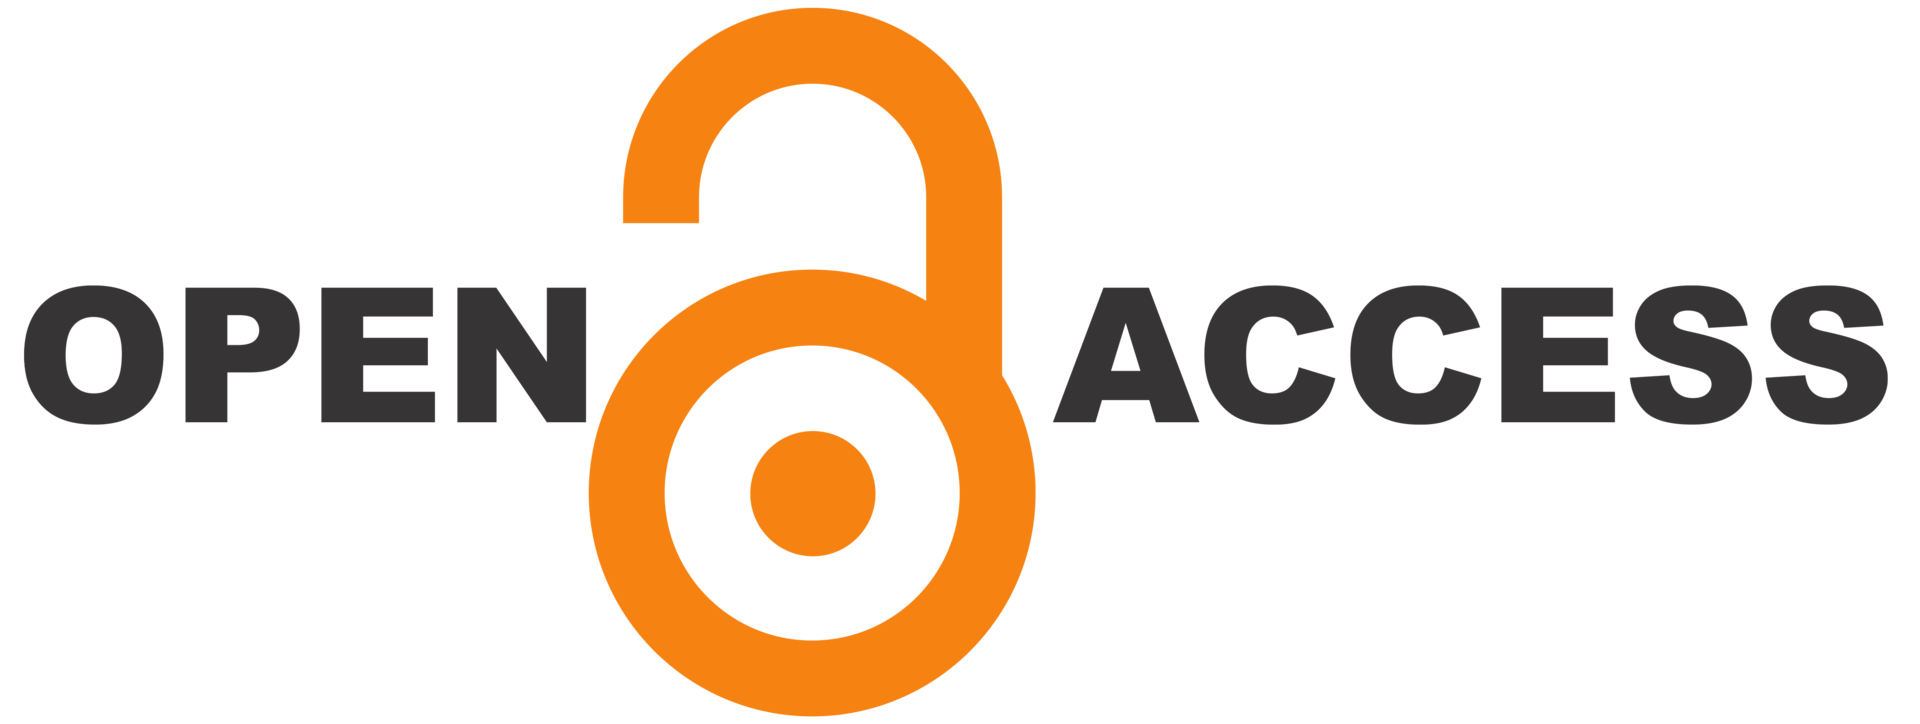 OPEN Access logo